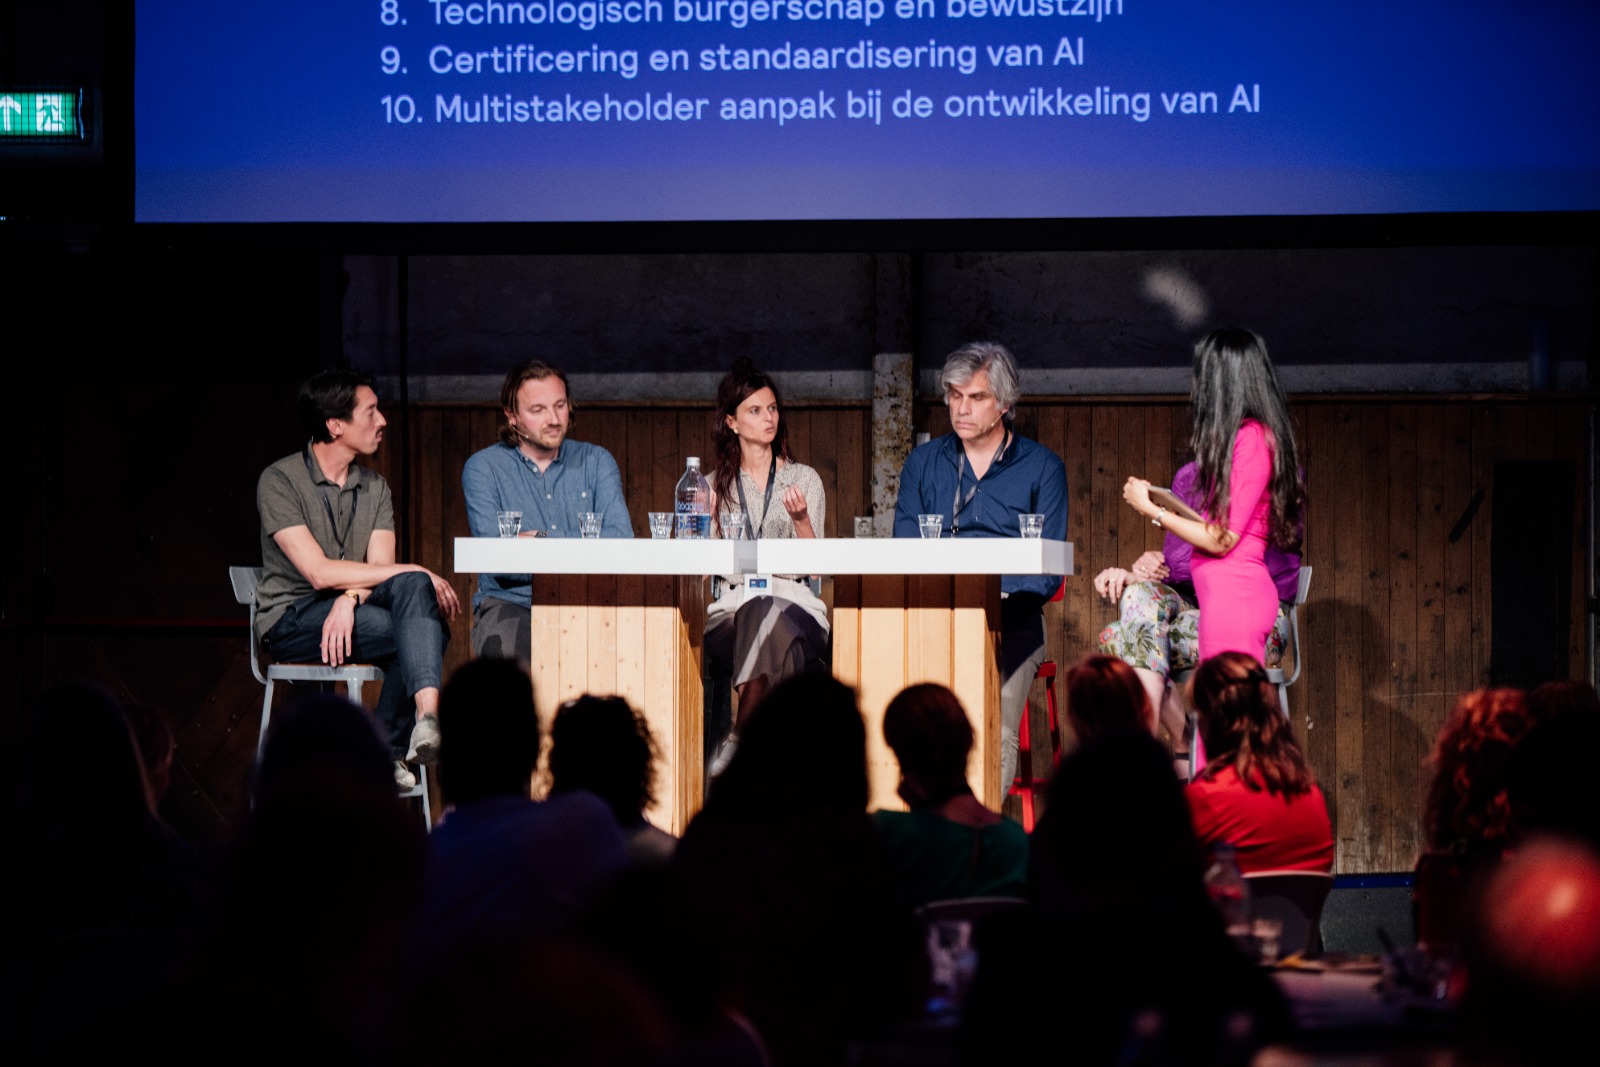 Panel on AI for a more inclusive labor market